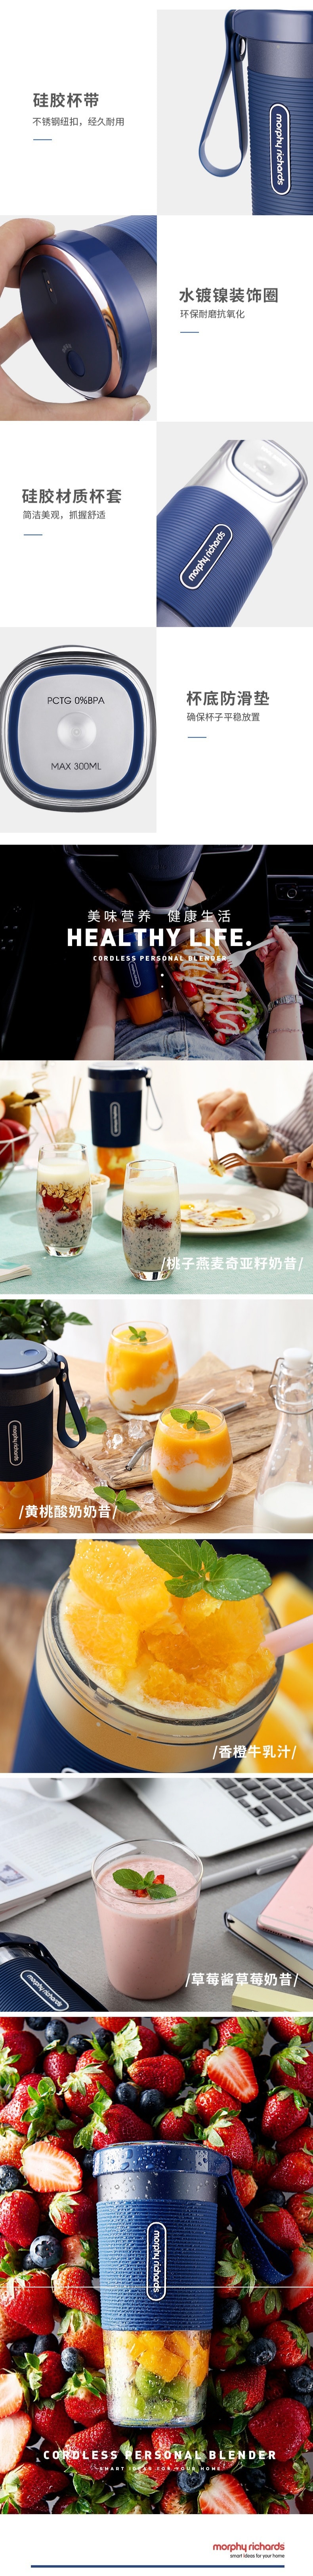 【中国直邮】摩飞便携式榨汁杯 多功能家用小型无线便携迷你水果汁料理机榨汁机 白色